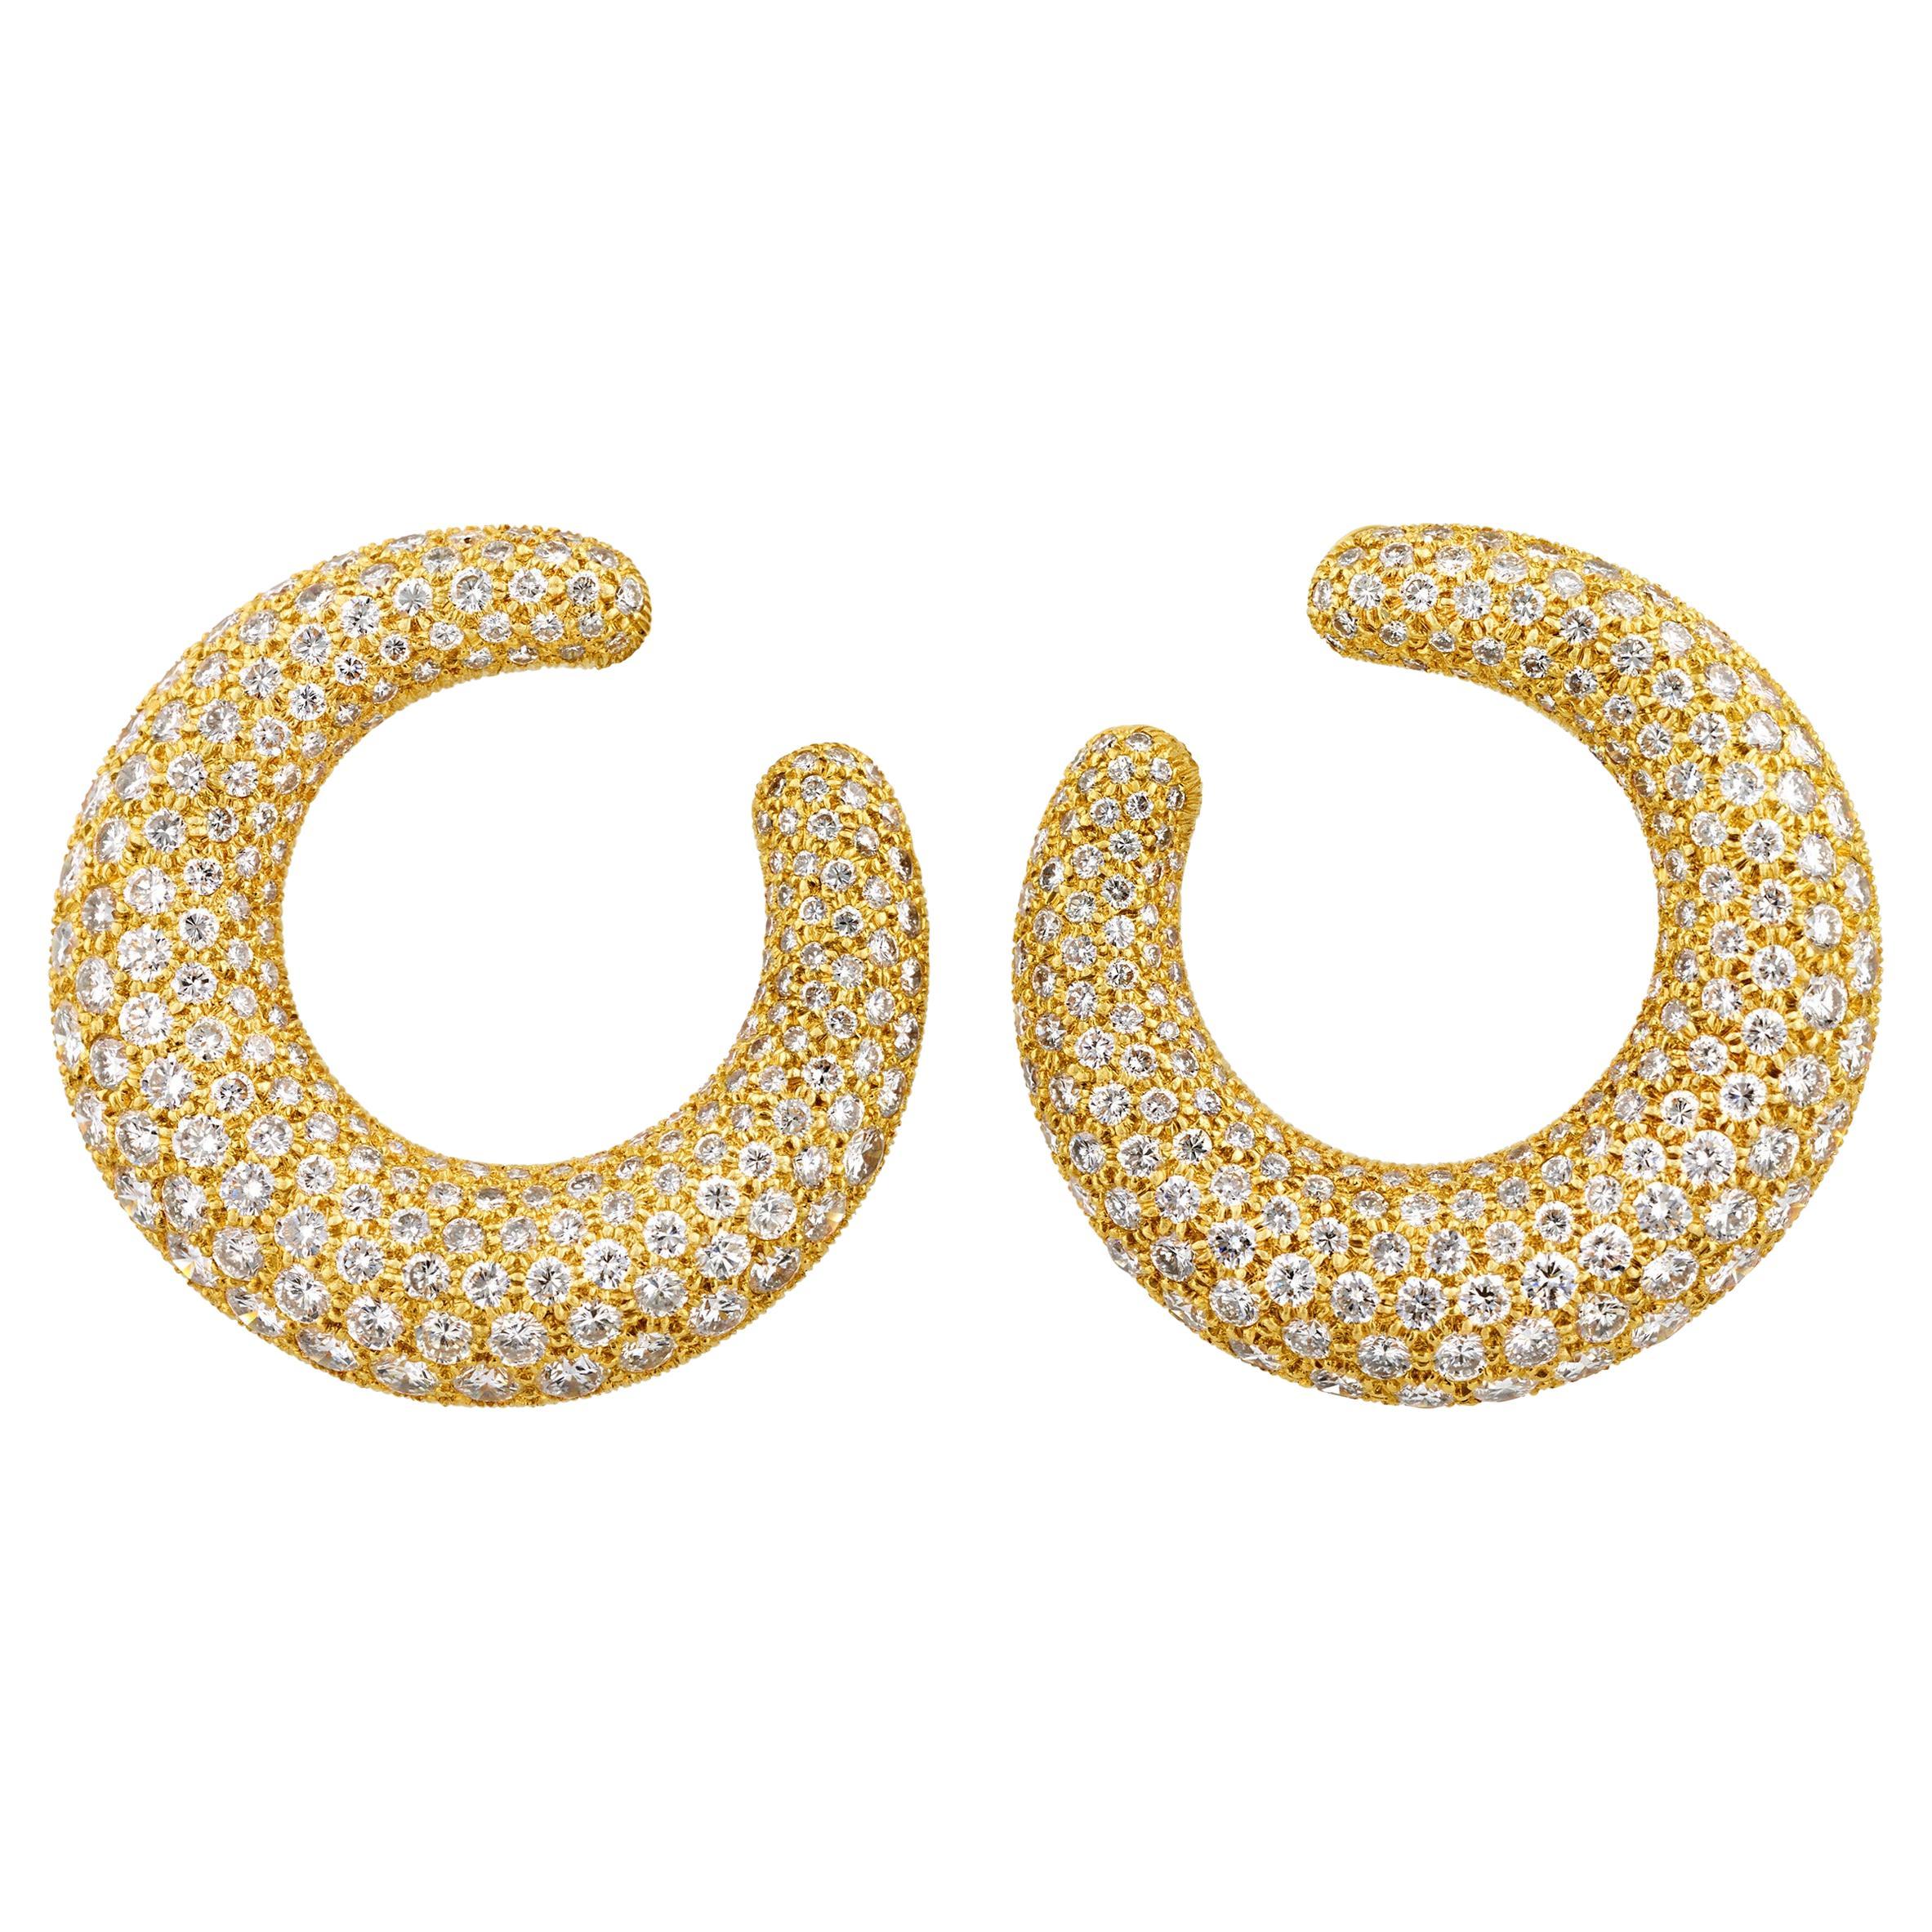 Diamond Hoop Earrings by Cartier